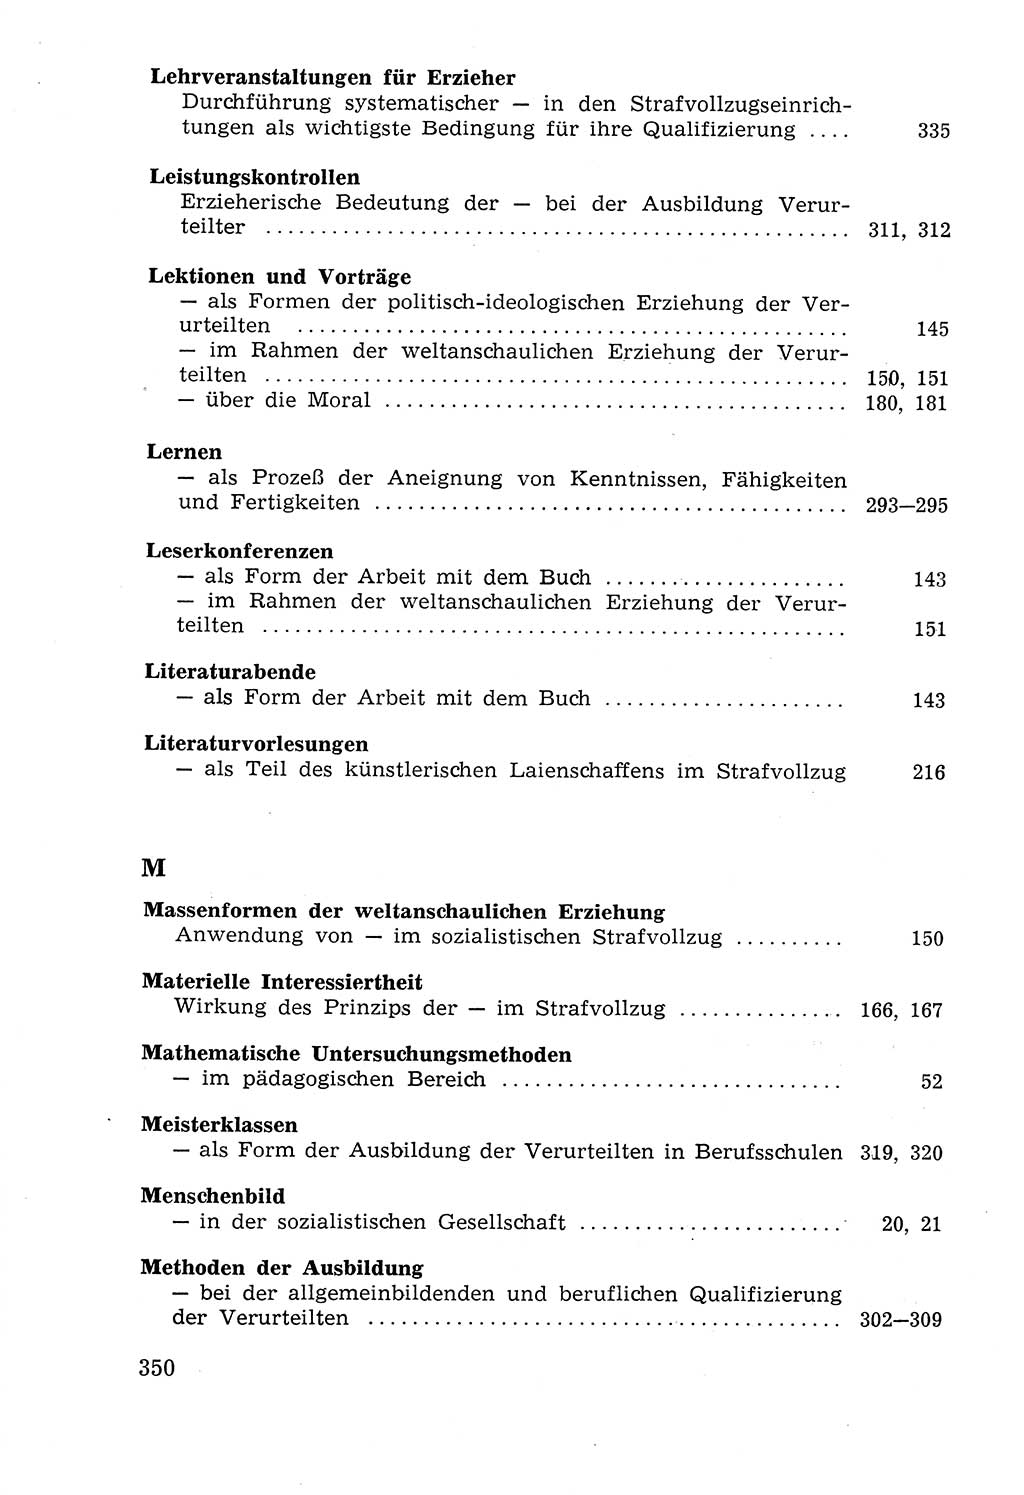 Lehrbuch der Strafvollzugspädagogik [Deutsche Demokratische Republik (DDR)] 1969, Seite 350 (Lb. SV-Pd. DDR 1969, S. 350)